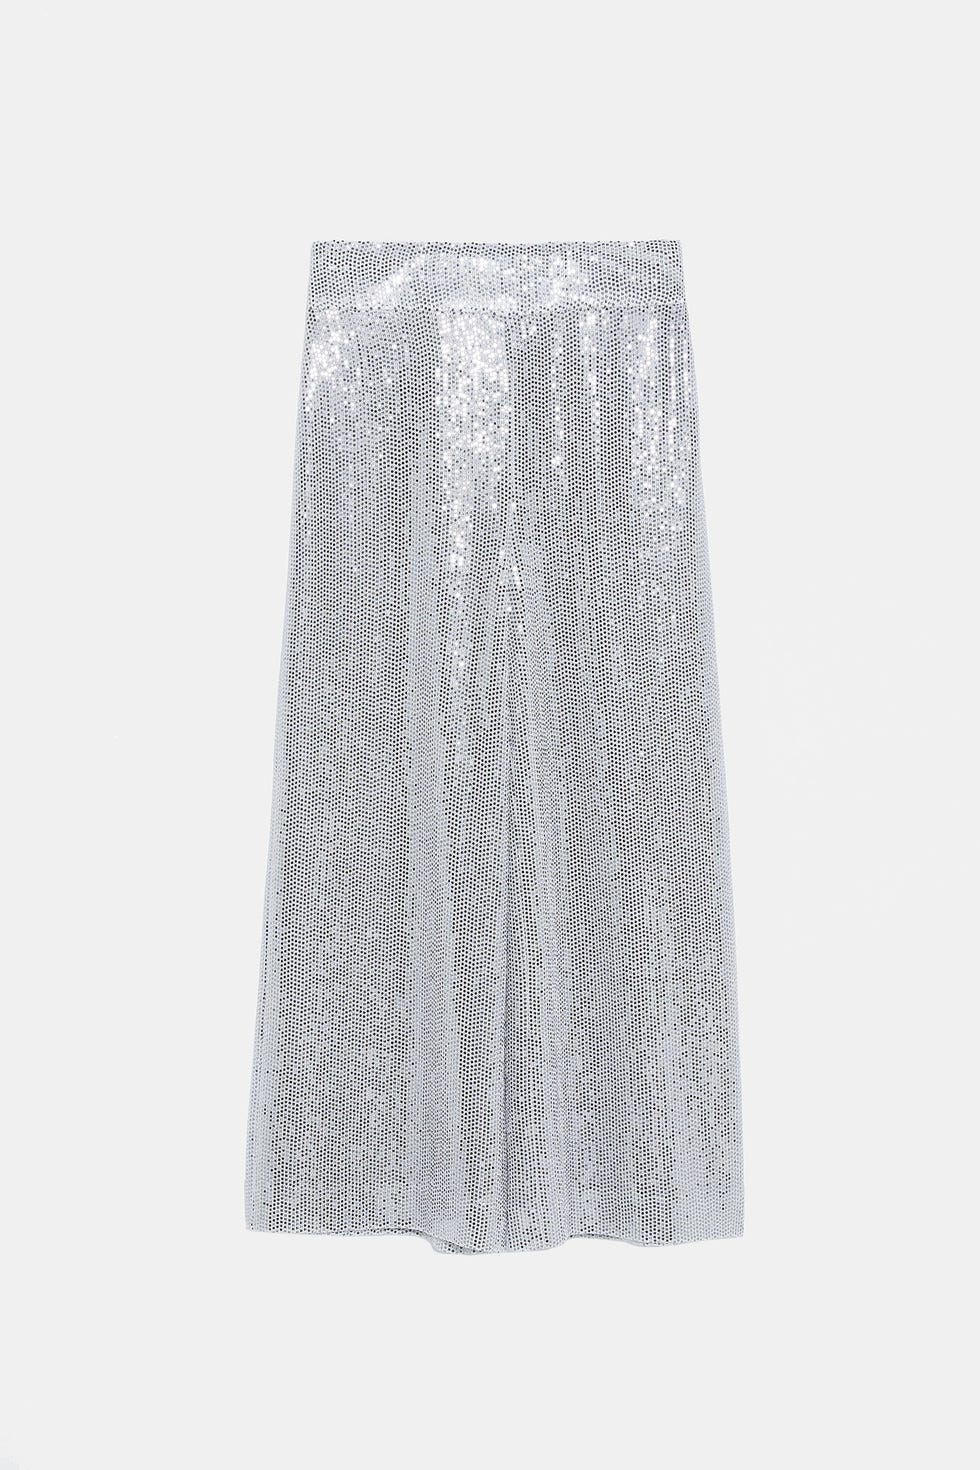 ZARA SEQUIN shirt silver dress Vestido camisero lentejuelas zara Size S, L